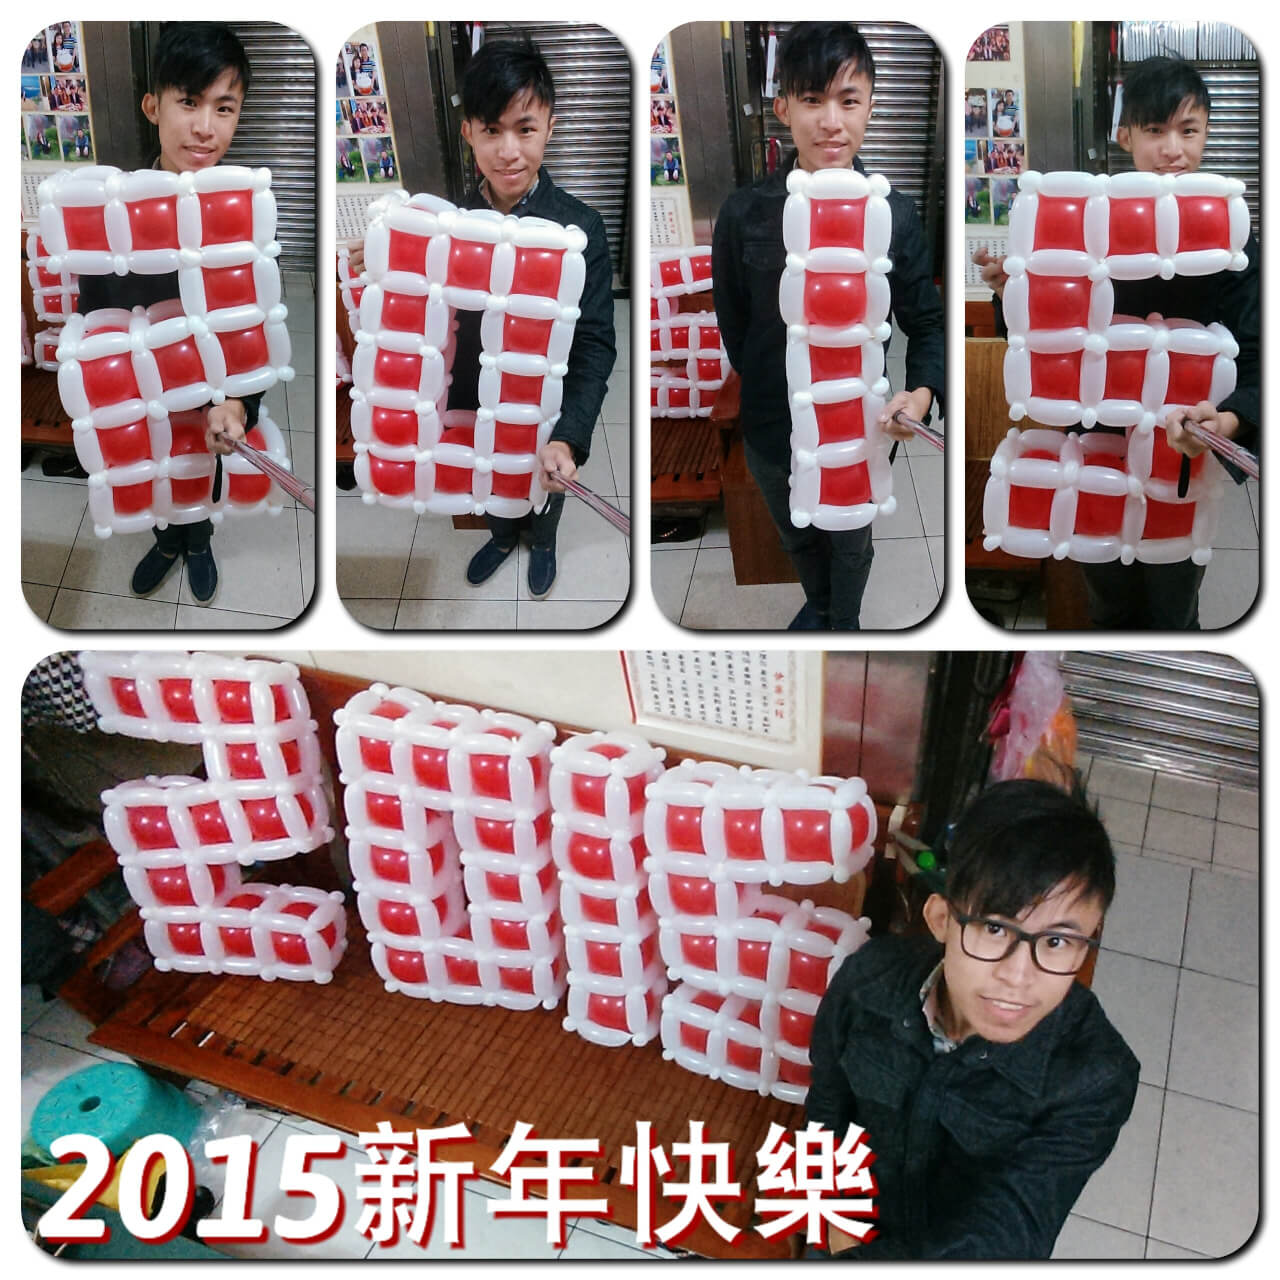 2015-01-01 造型氣球作品 2015新年快樂唷！